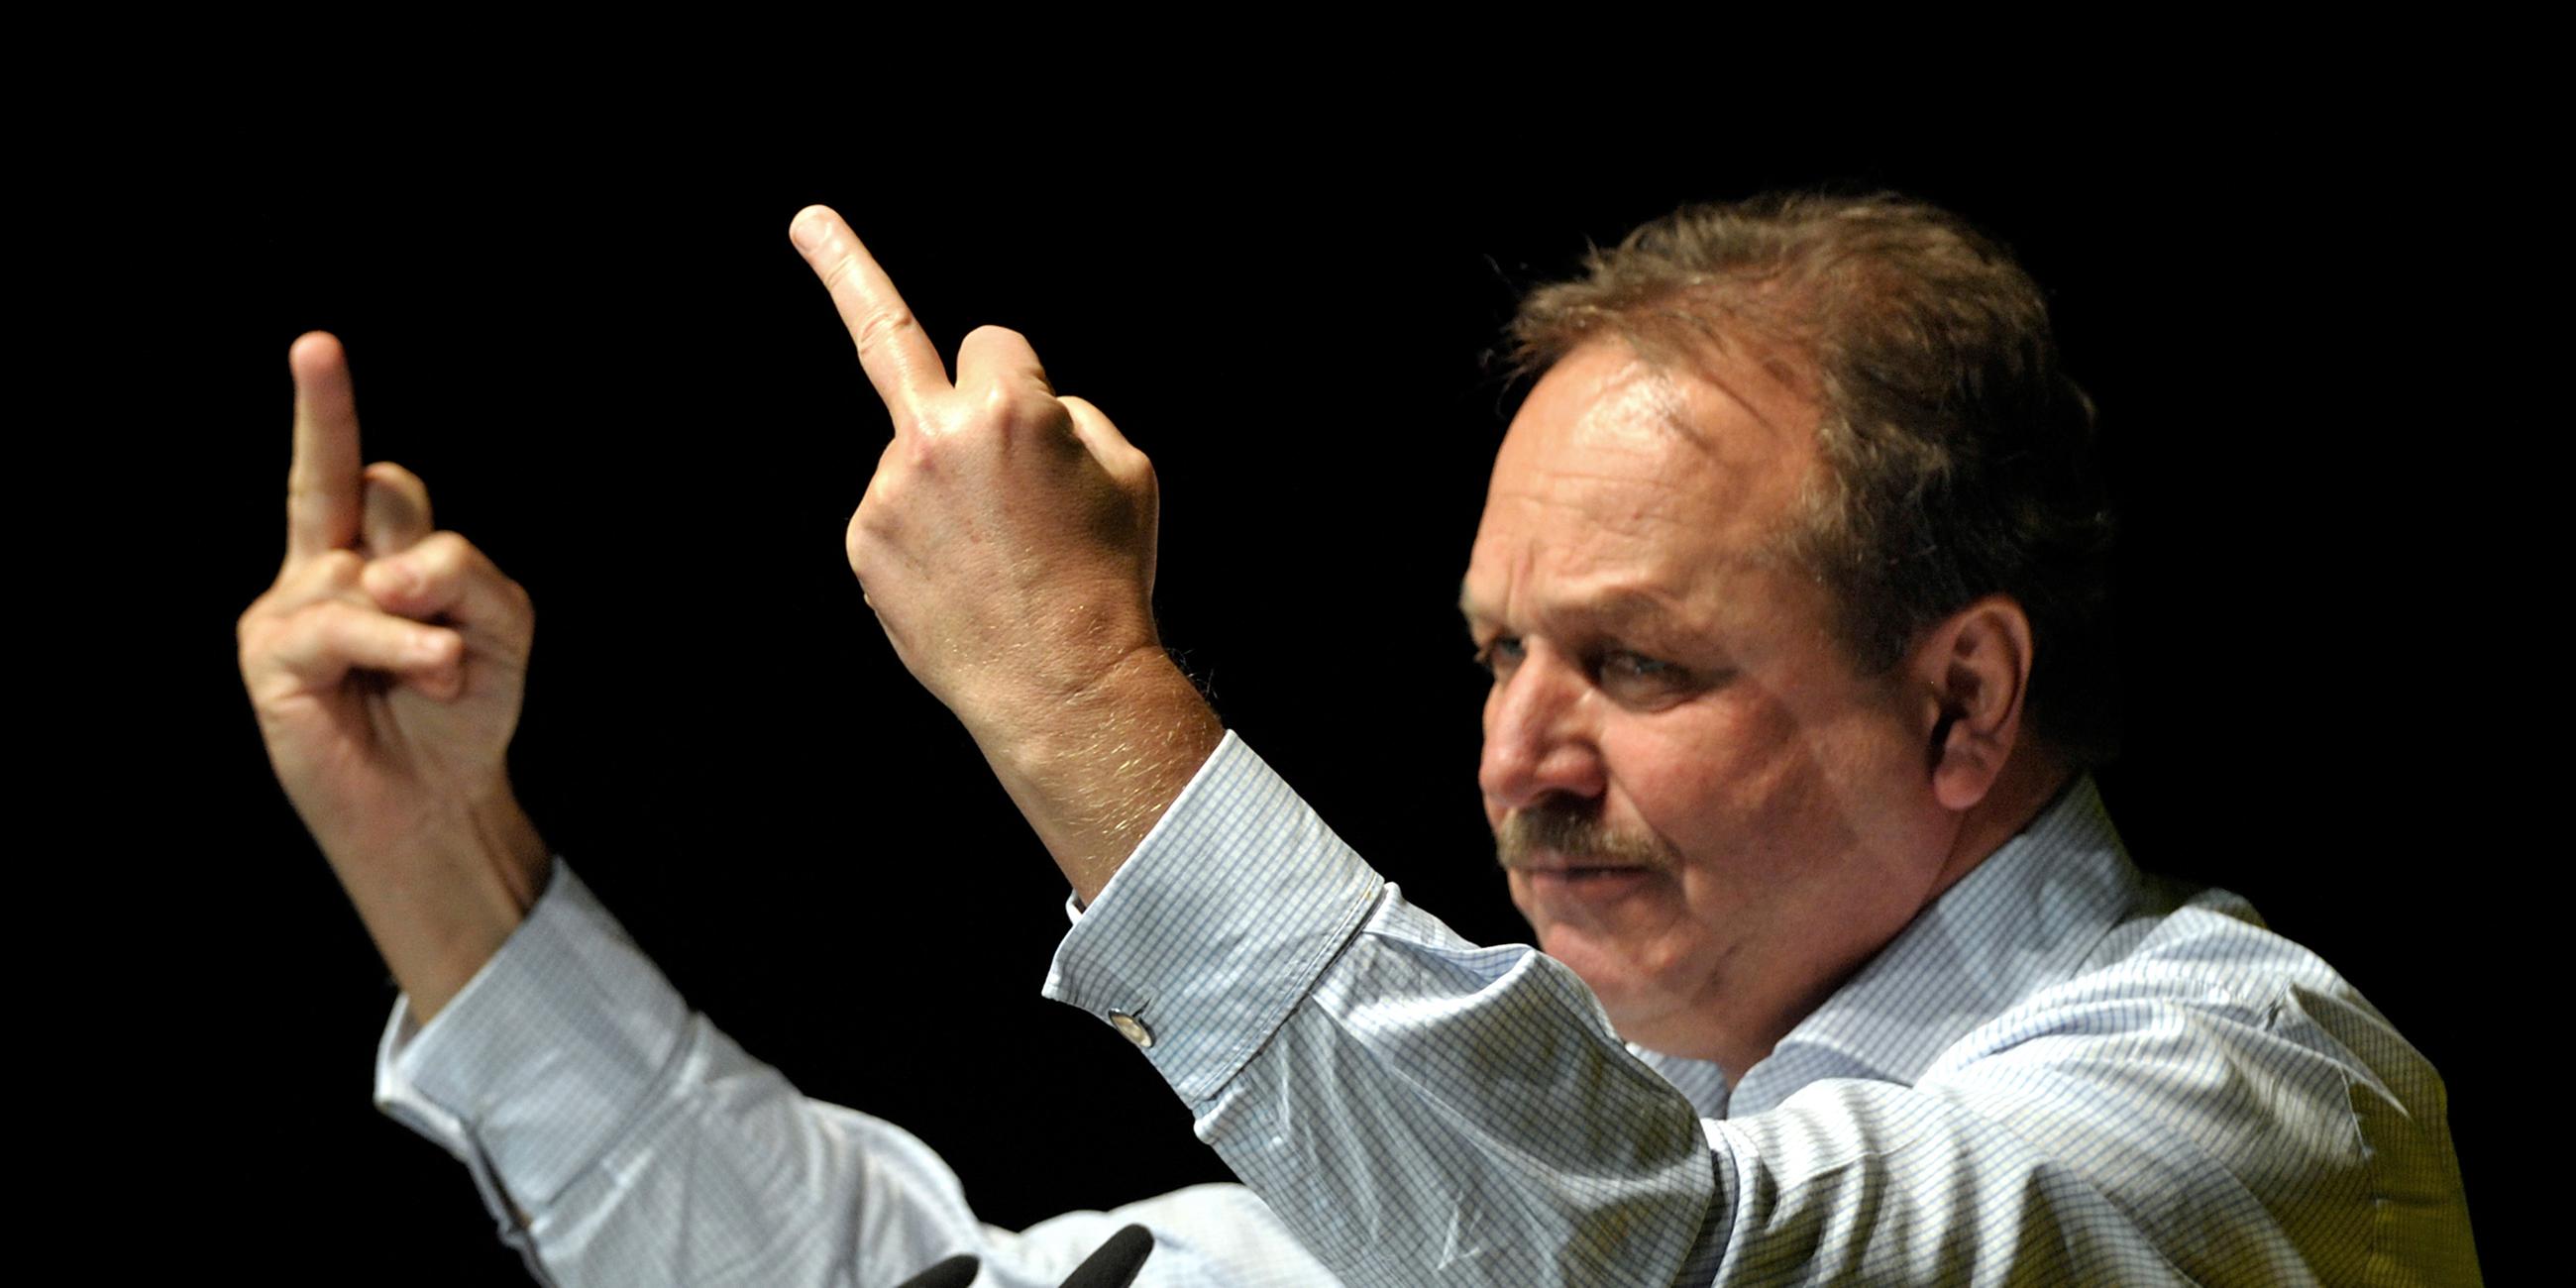 Frank Bsirske zeigt den Mittelfinger während seiner Rede bei einer Demonstration des deutschen Gewerkschaftsbundes (DGB) 